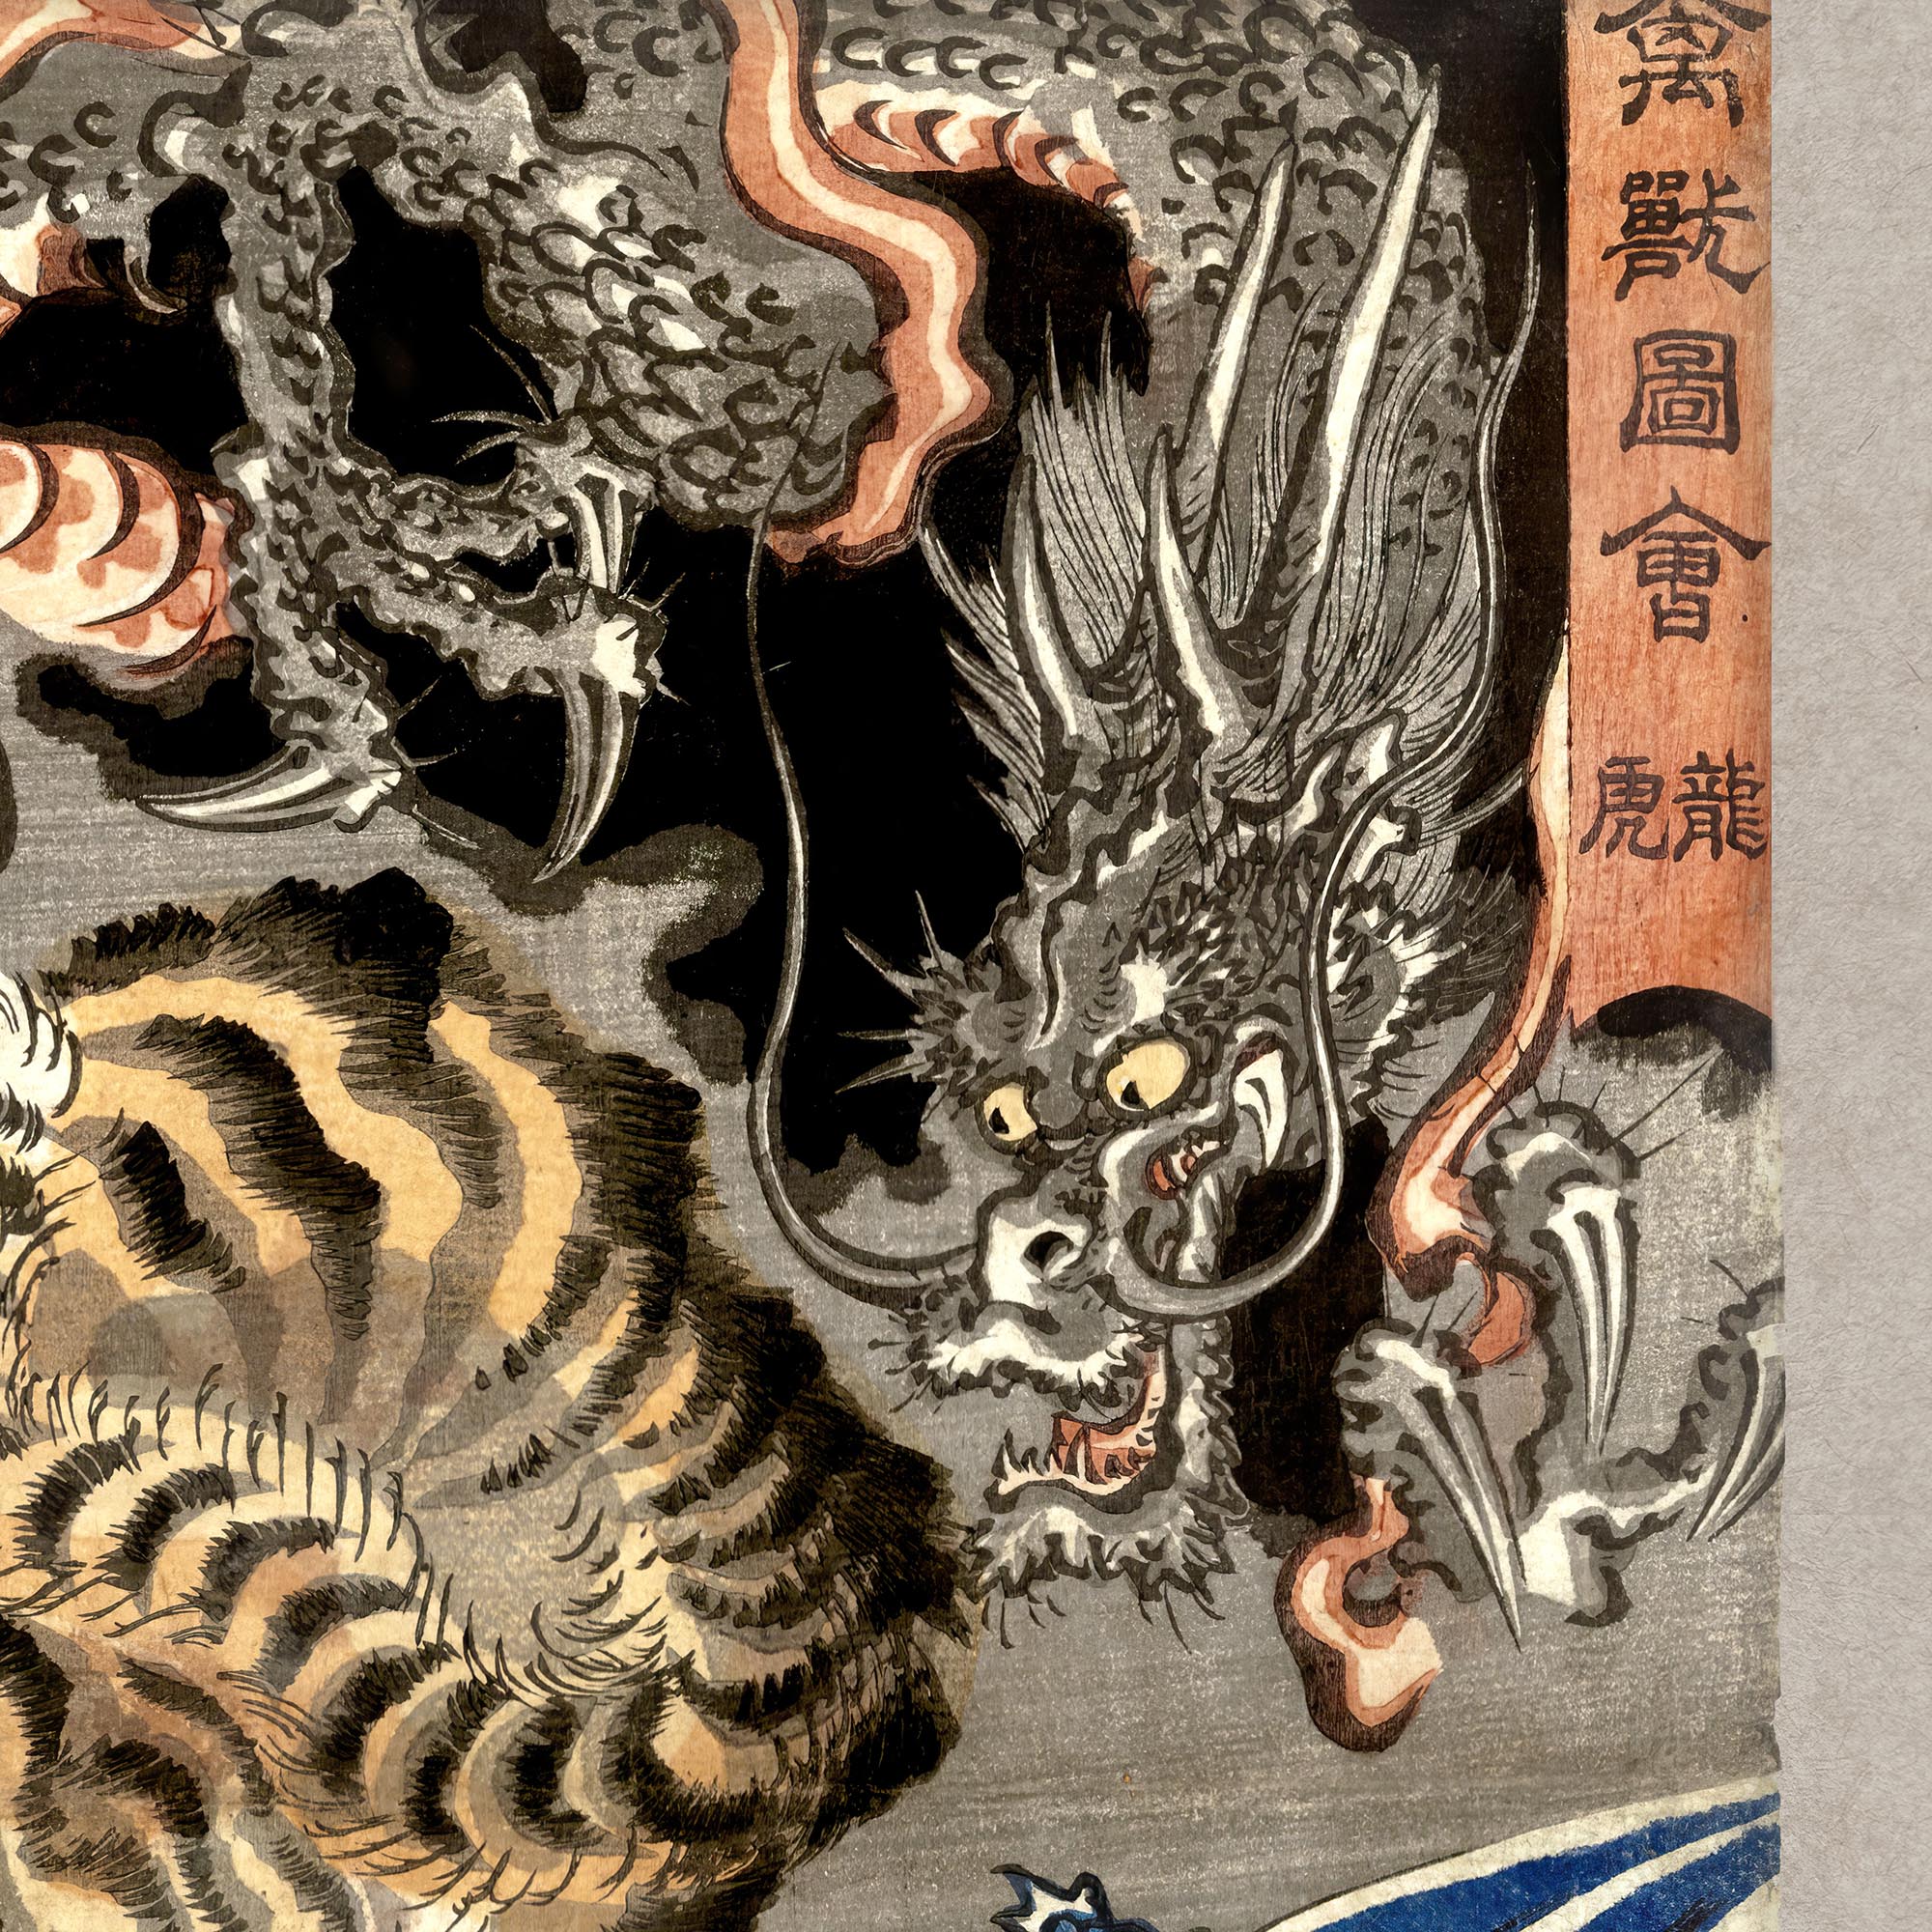 Framed Print Tiger and Dragon (Yin and Yang) Japanese Mythology, Kuniyoshi Ukiyo-e Antique Serpent Wood Block Yokai Asian Decor Framed Art Print